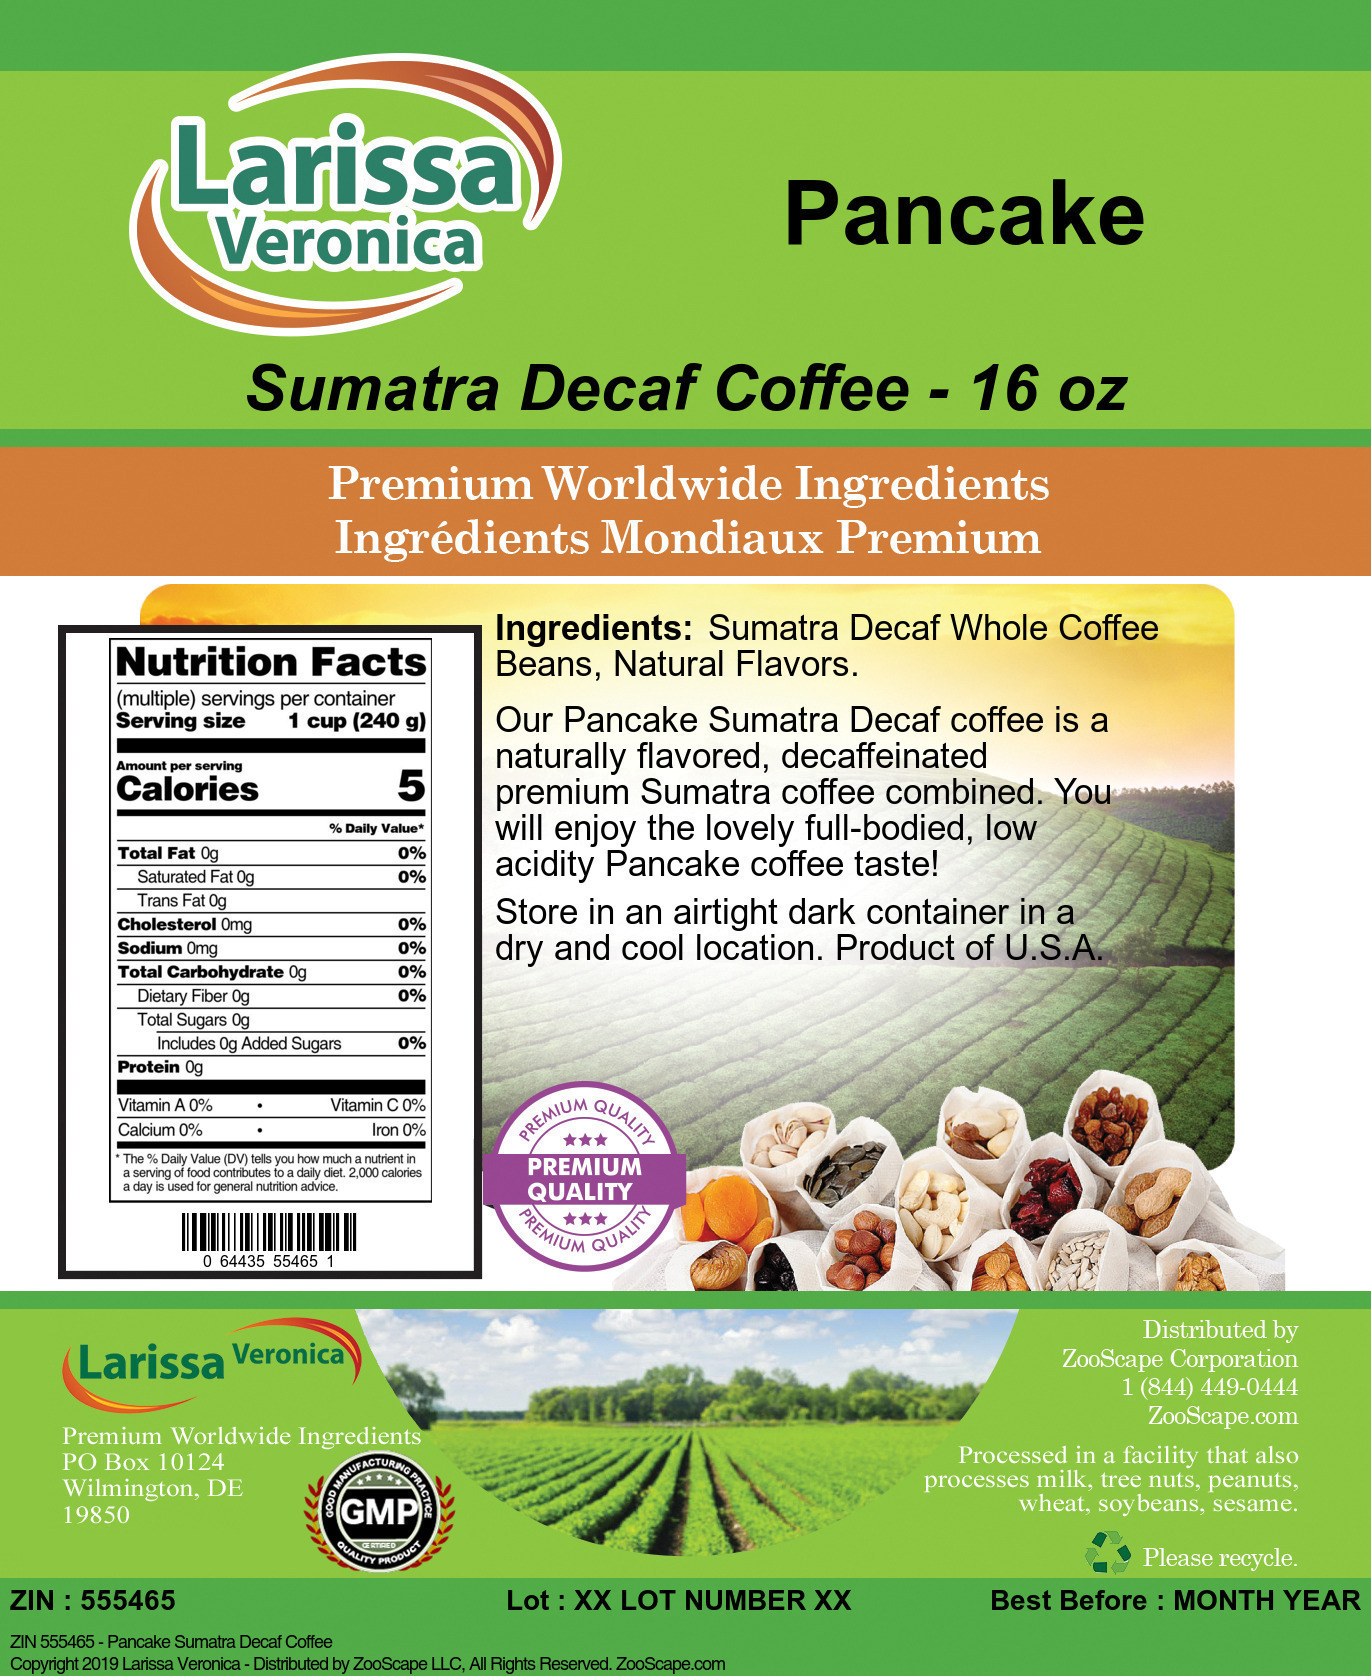 Pancake Sumatra Decaf Coffee - Label